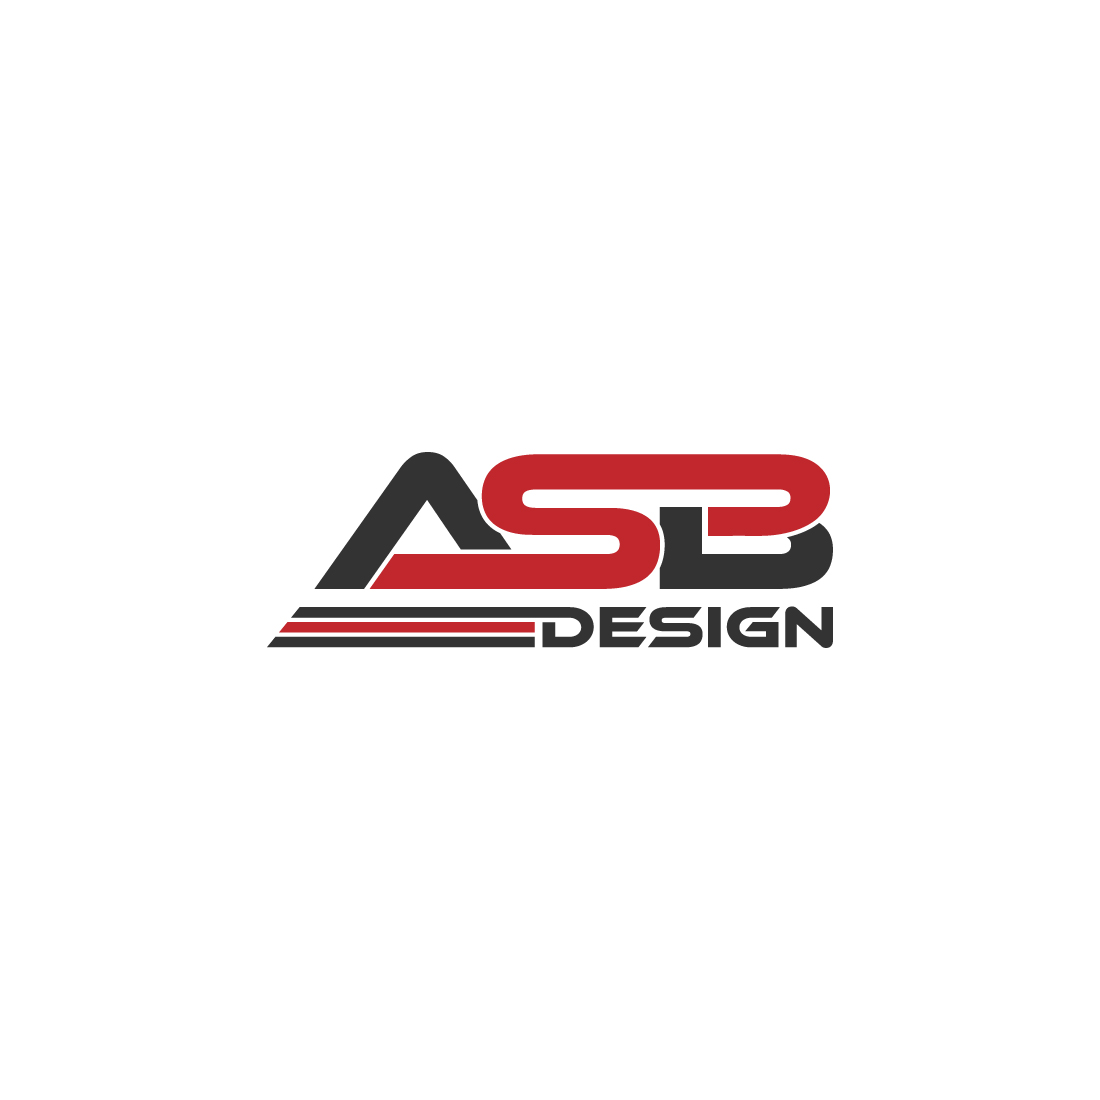 ASB logo design preview image.